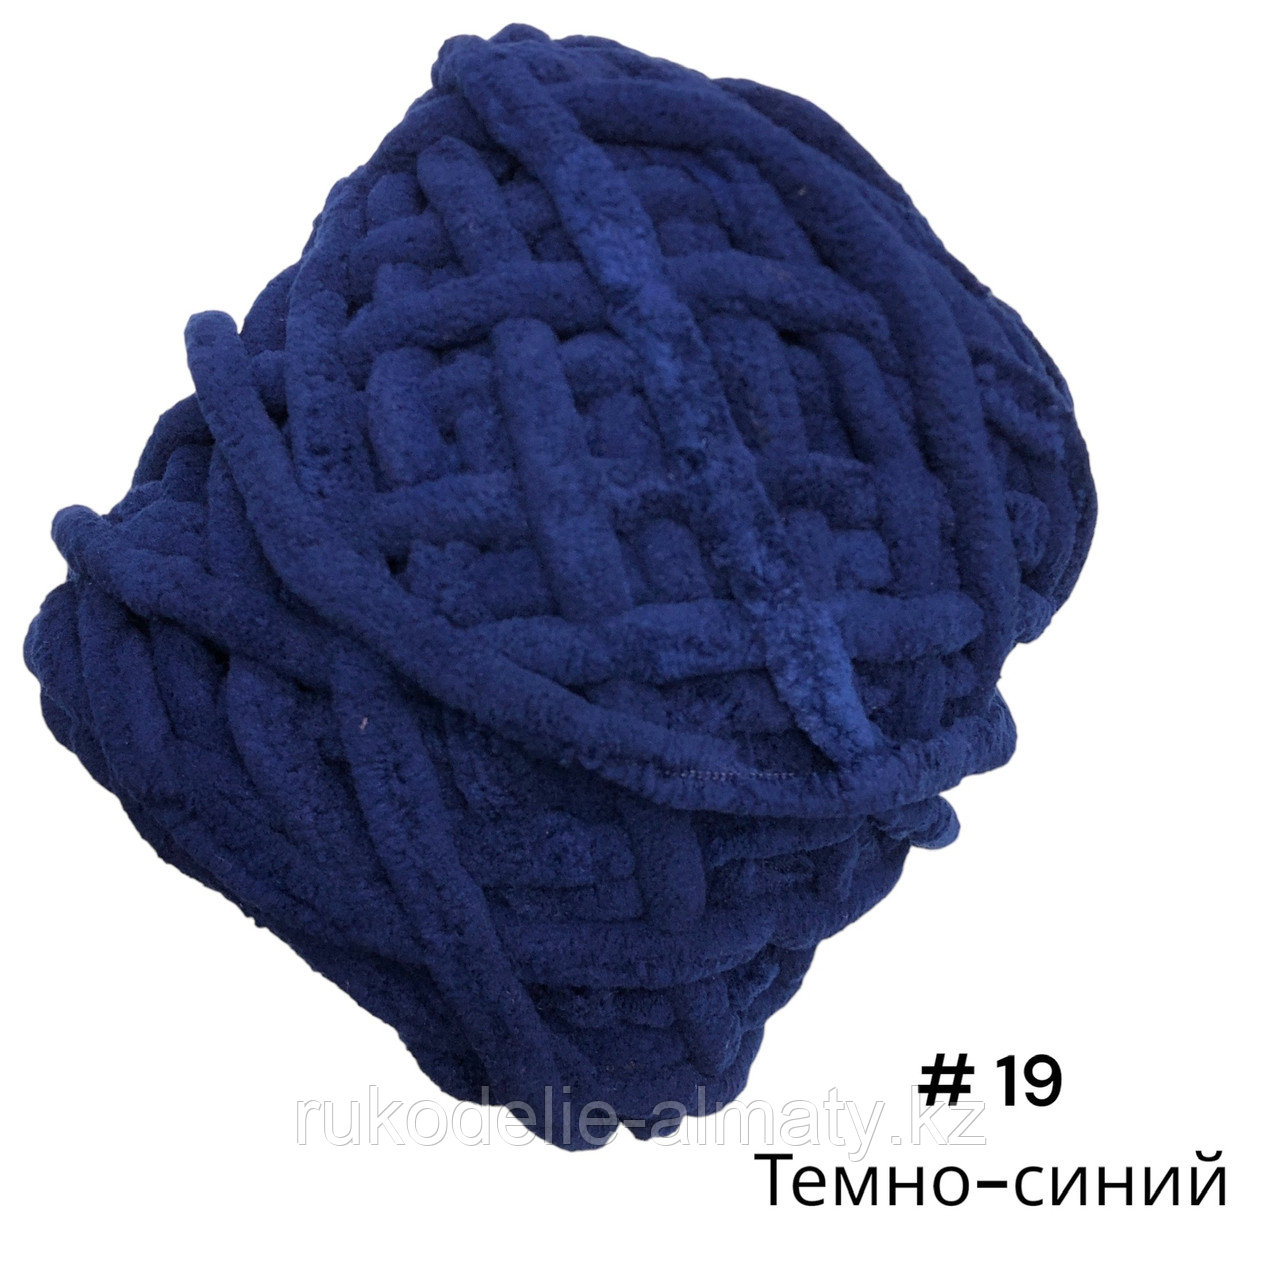 Велюровая пряжа для ручного вязания, толщиной 0,8 мм темно-синий